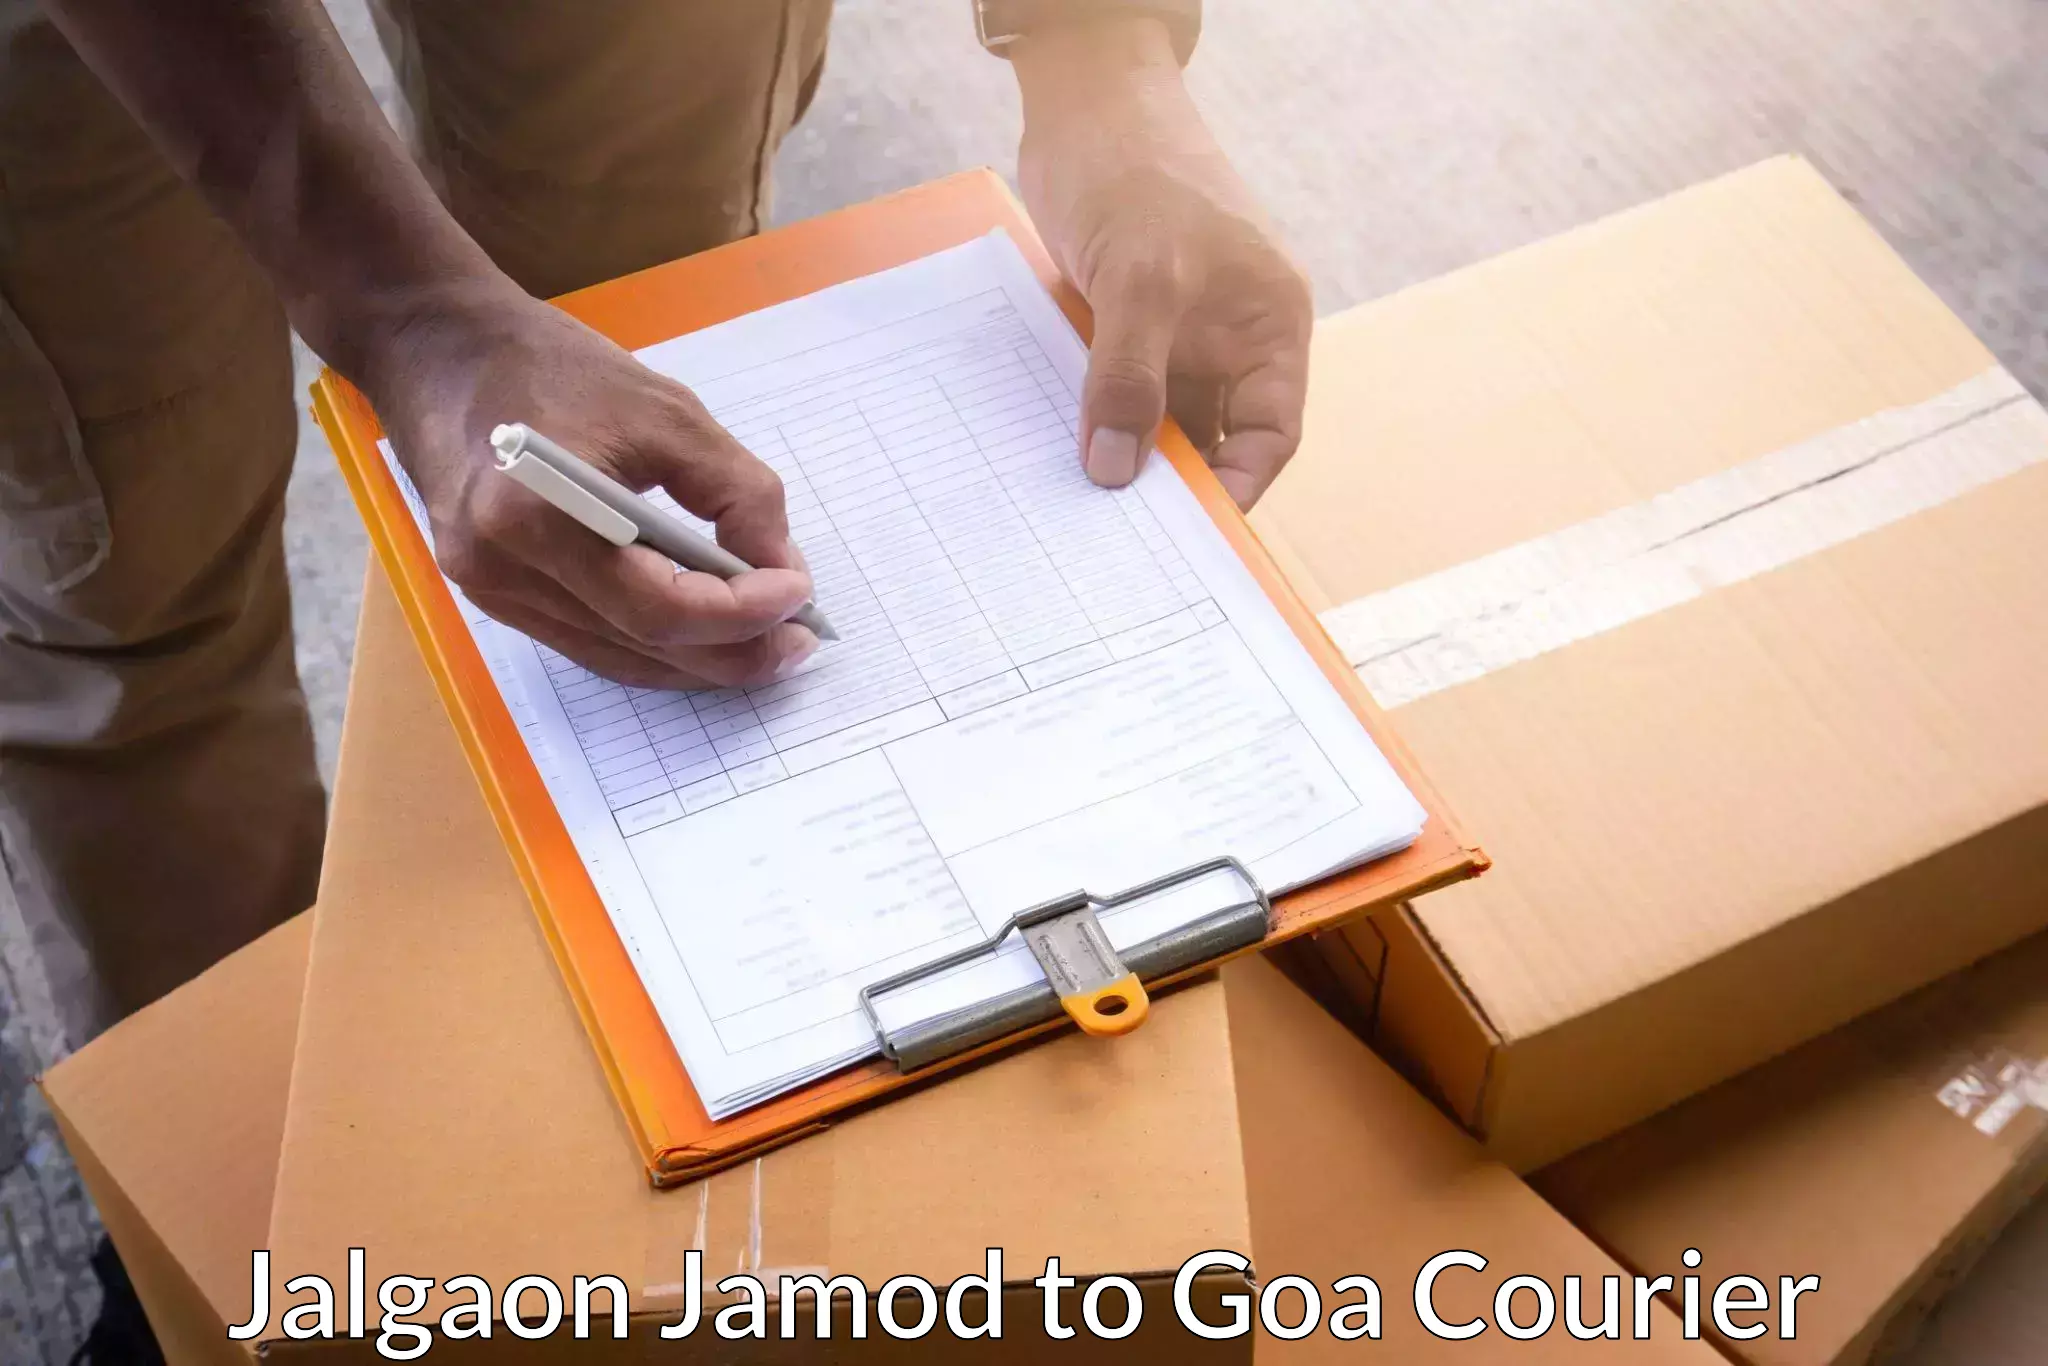 Affordable parcel service Jalgaon Jamod to Margao